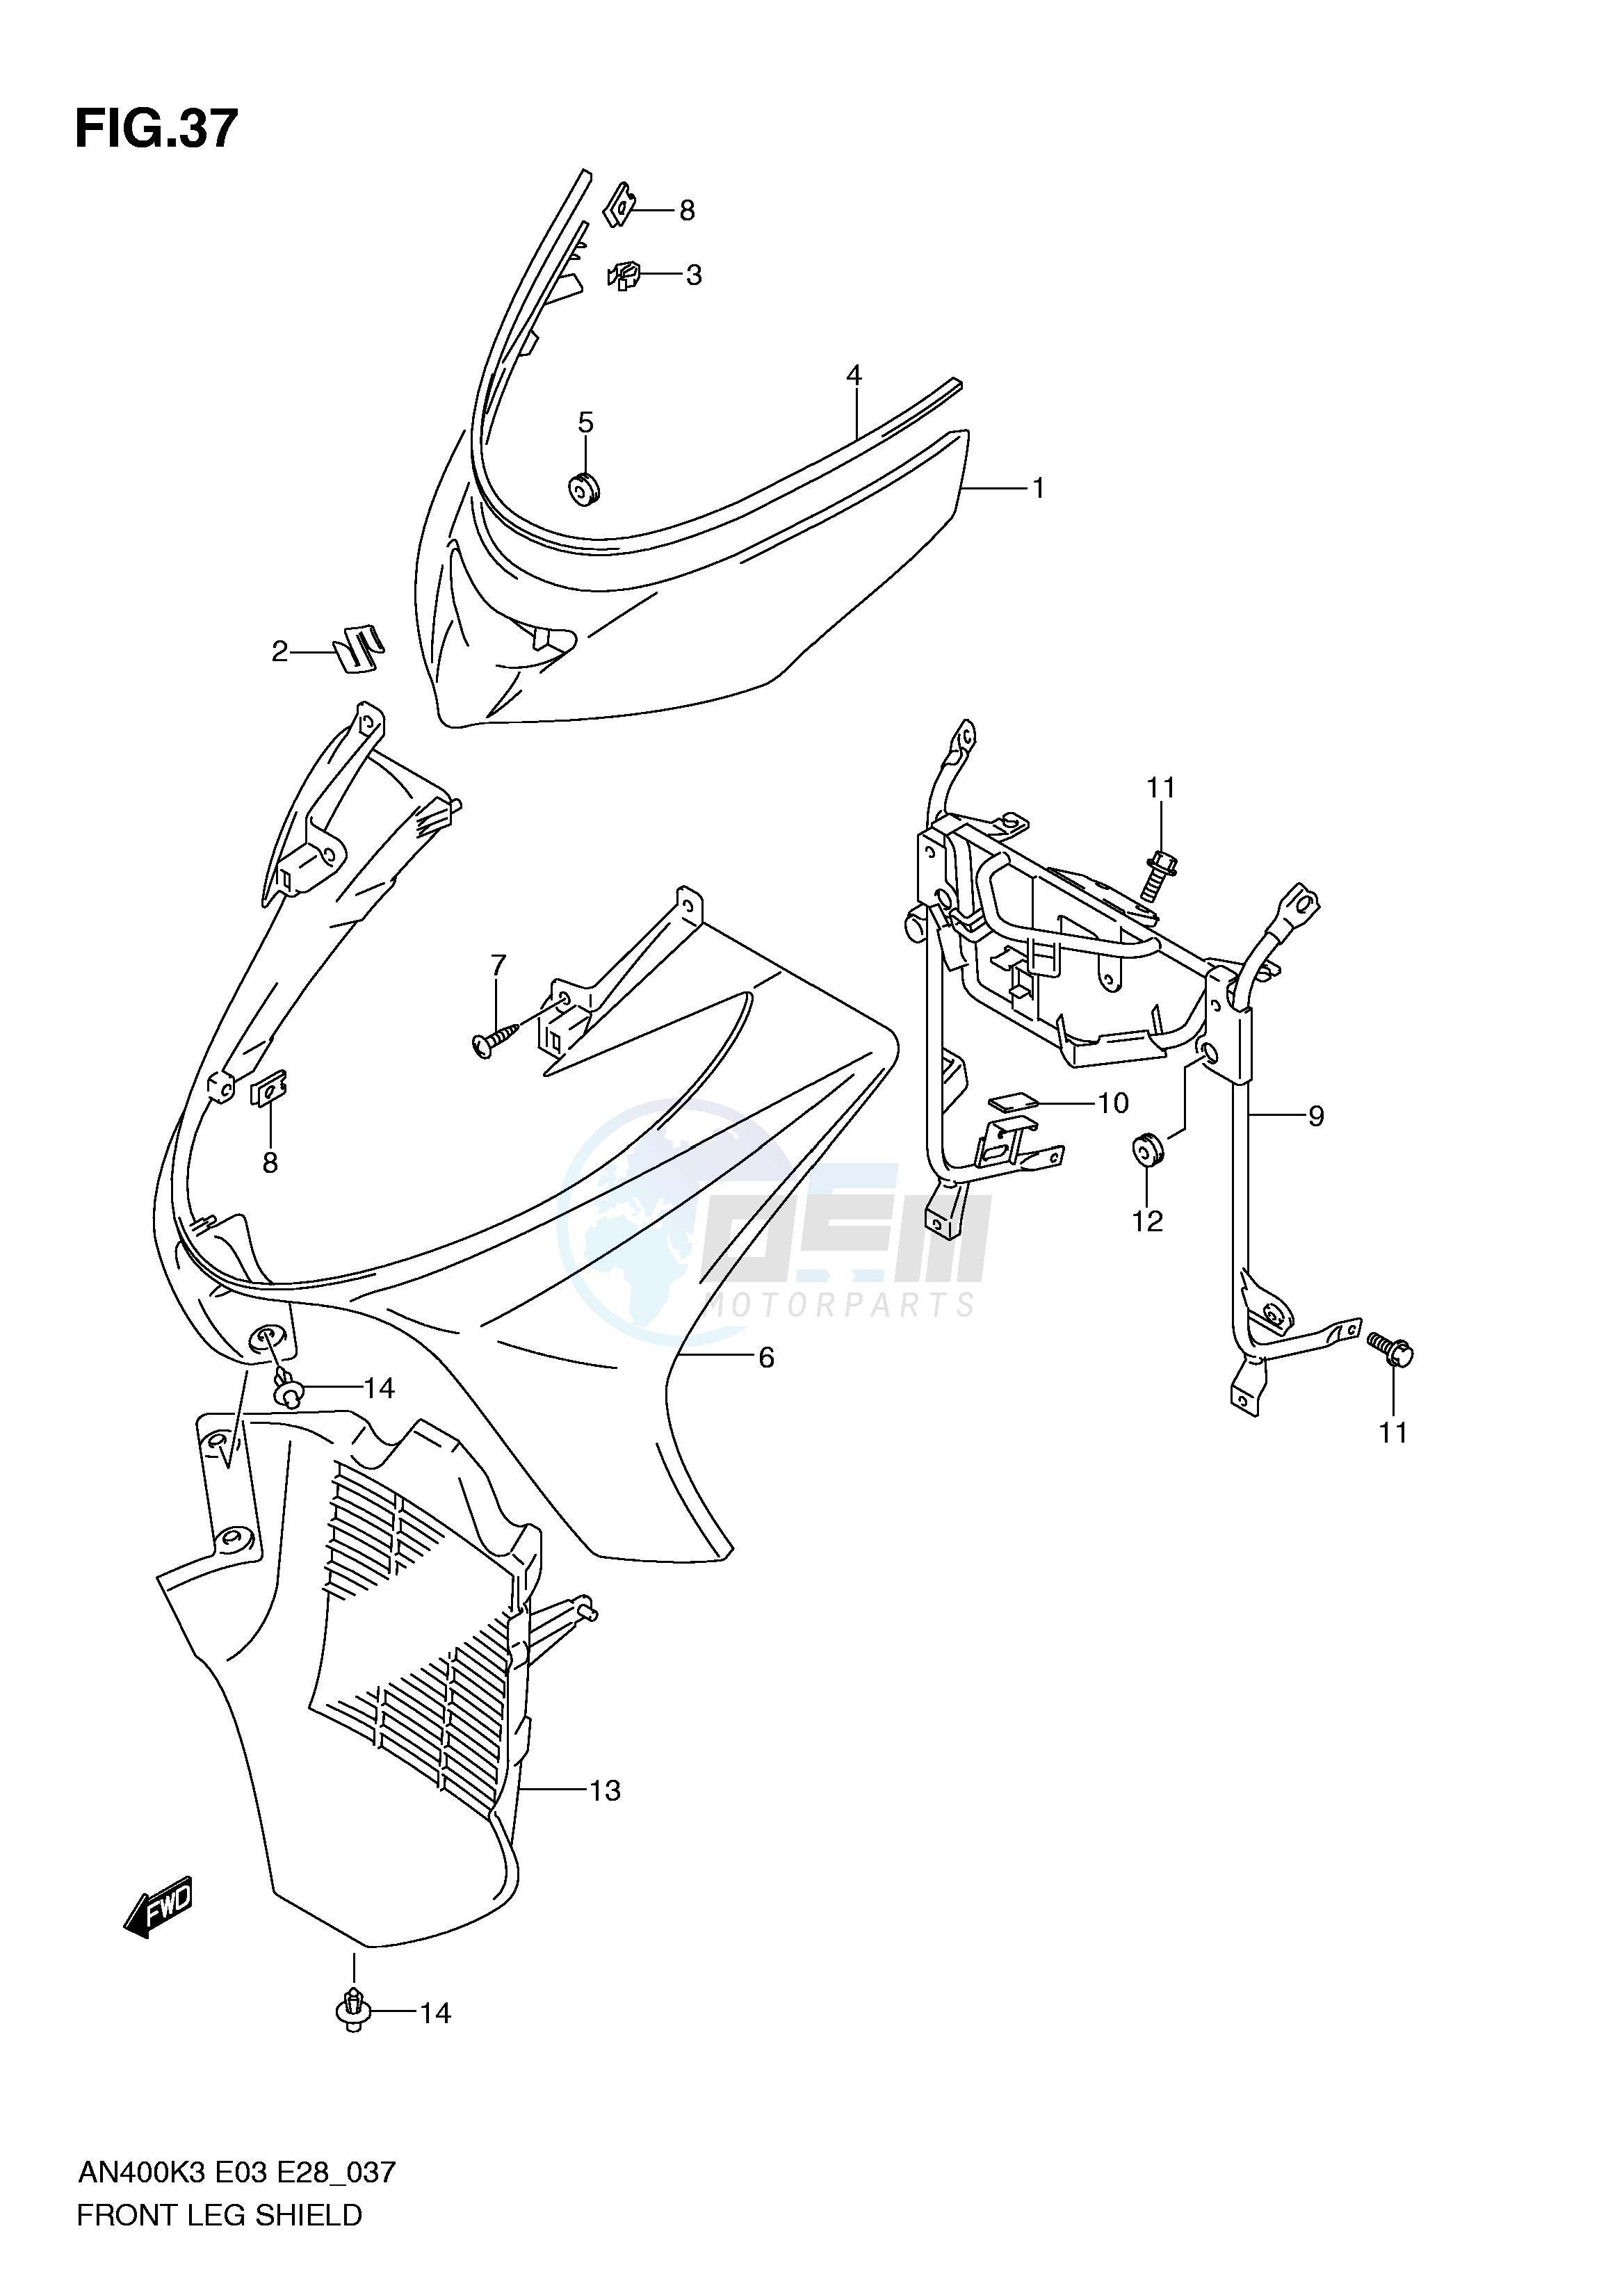 FRONT LEG SHIELD (MODEL K3 K4) blueprint